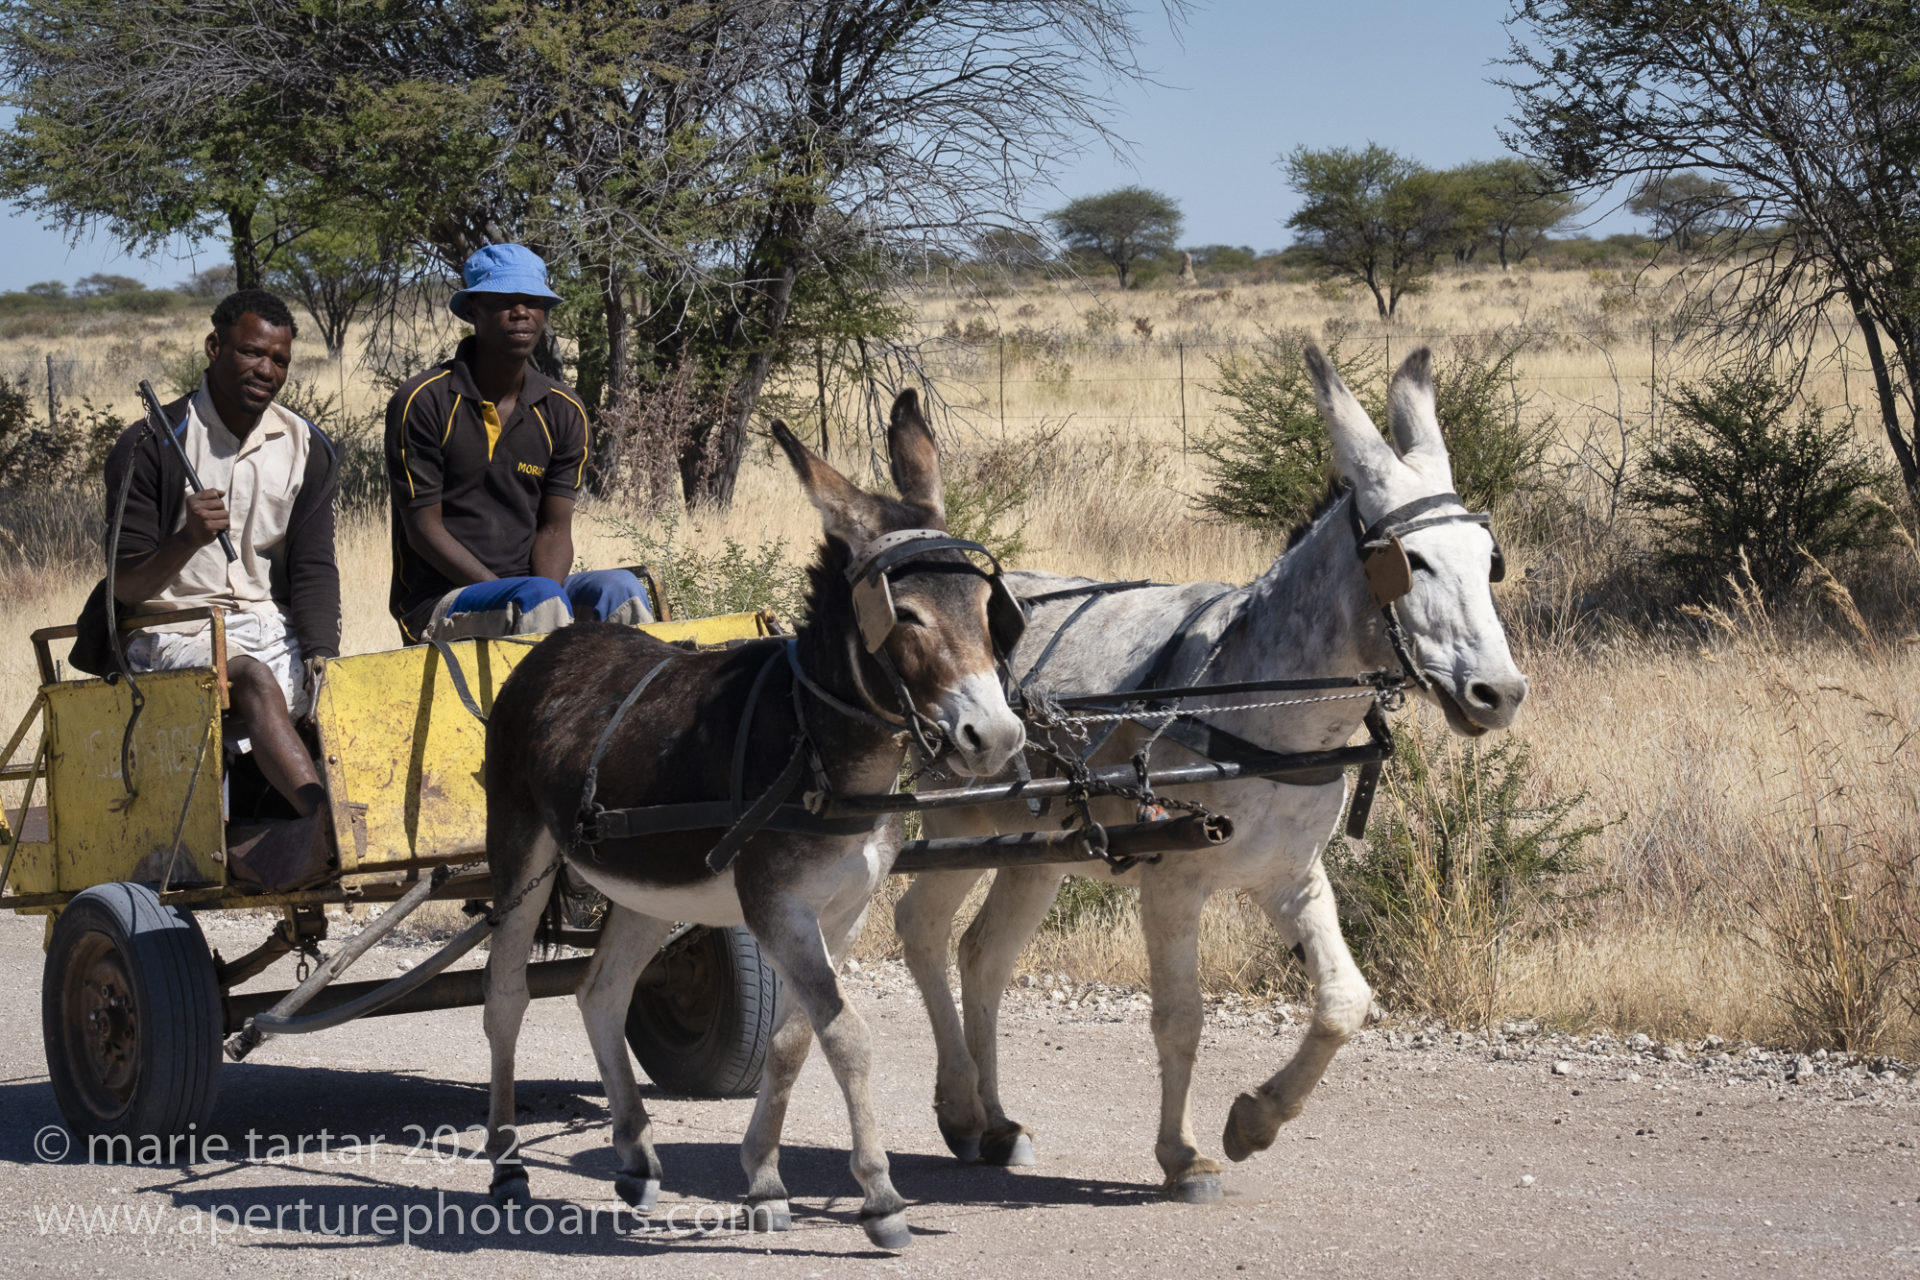 Donkey cart, near Etosha National Park, Namibia